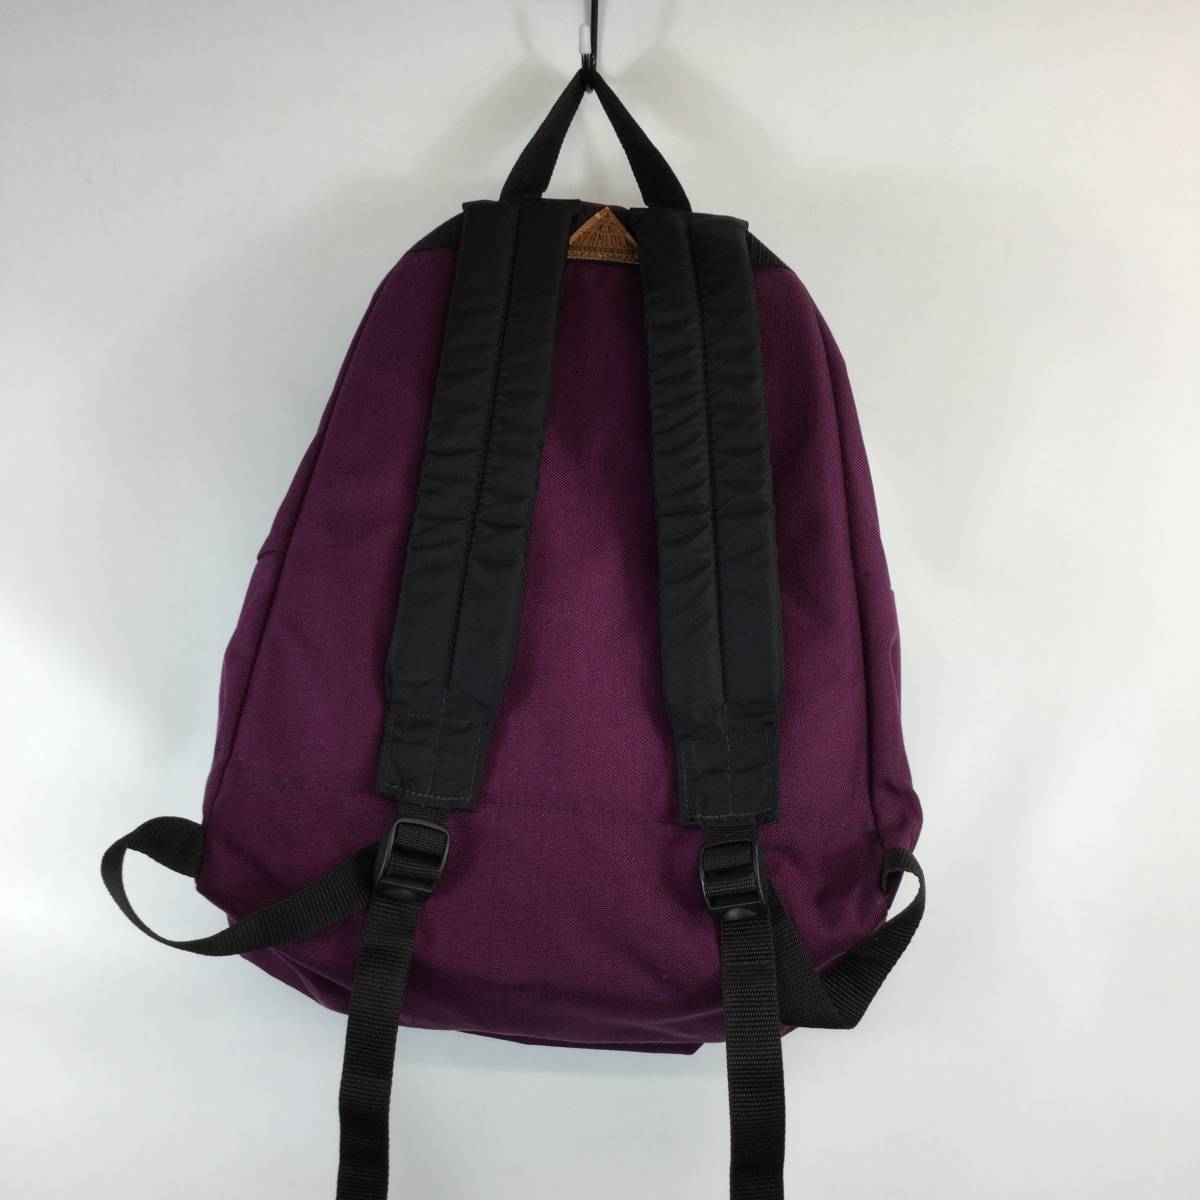  товар в хорошем состоянии  90s USA пр-во    на улице   продукция  OUTDOOR PRODUCTS  рюкзак    рюкзак   фиолетовый 